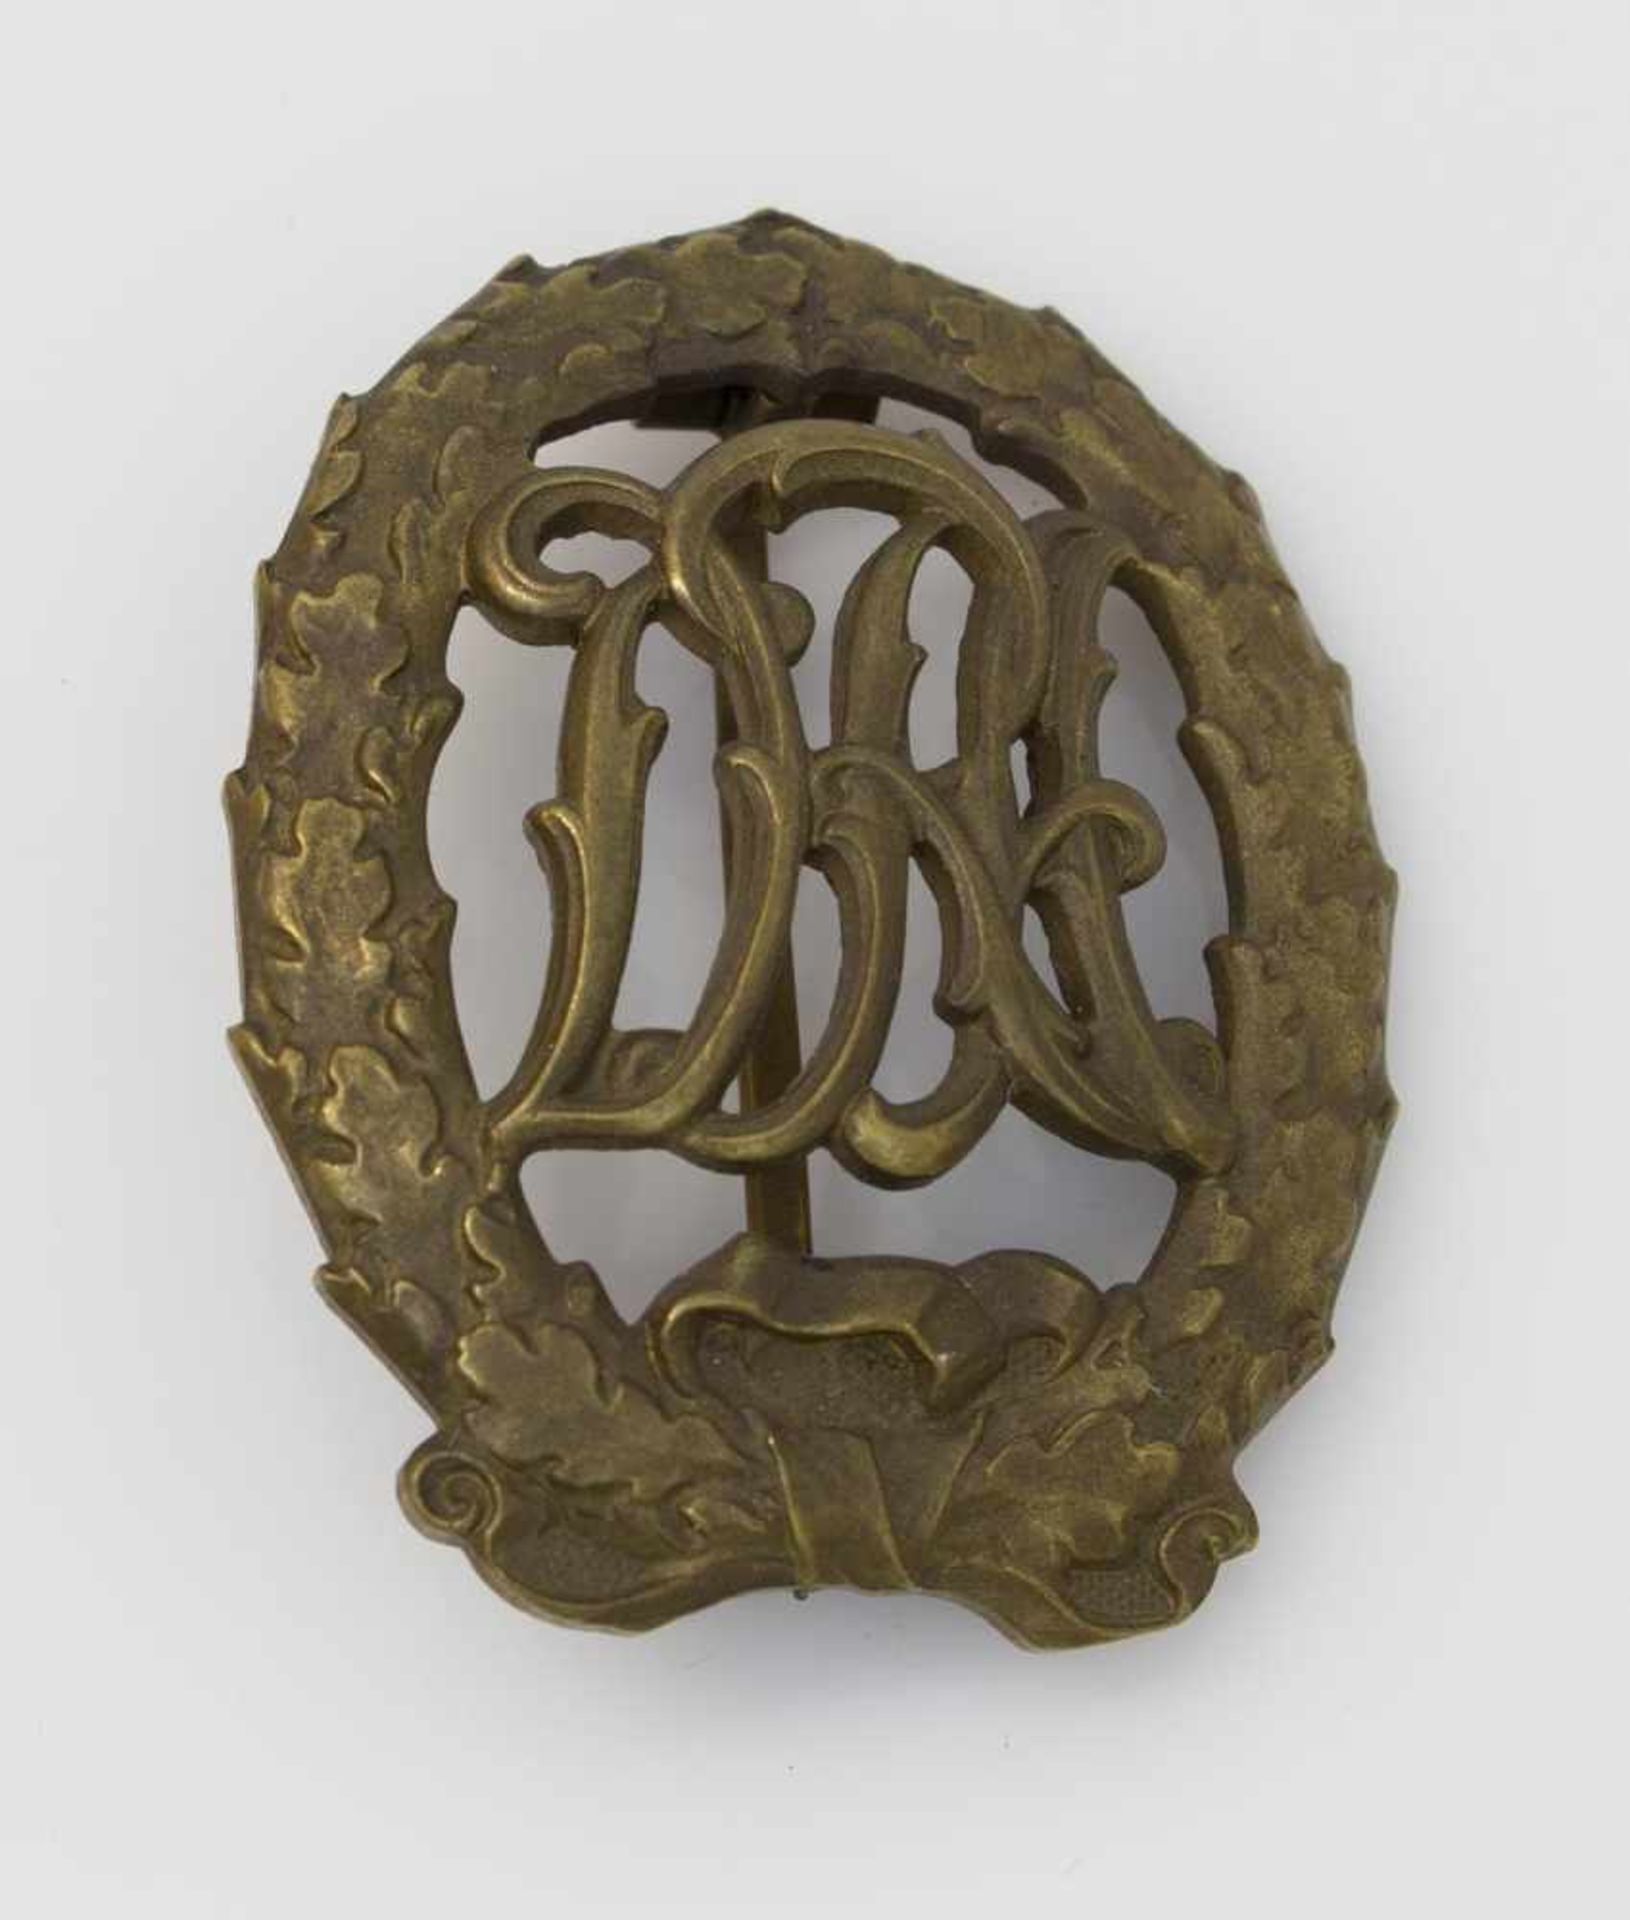 Sportabzeichen in Bronze, Weimarer Republik, Deutscher Reichsausschuß für Leibesübungen,